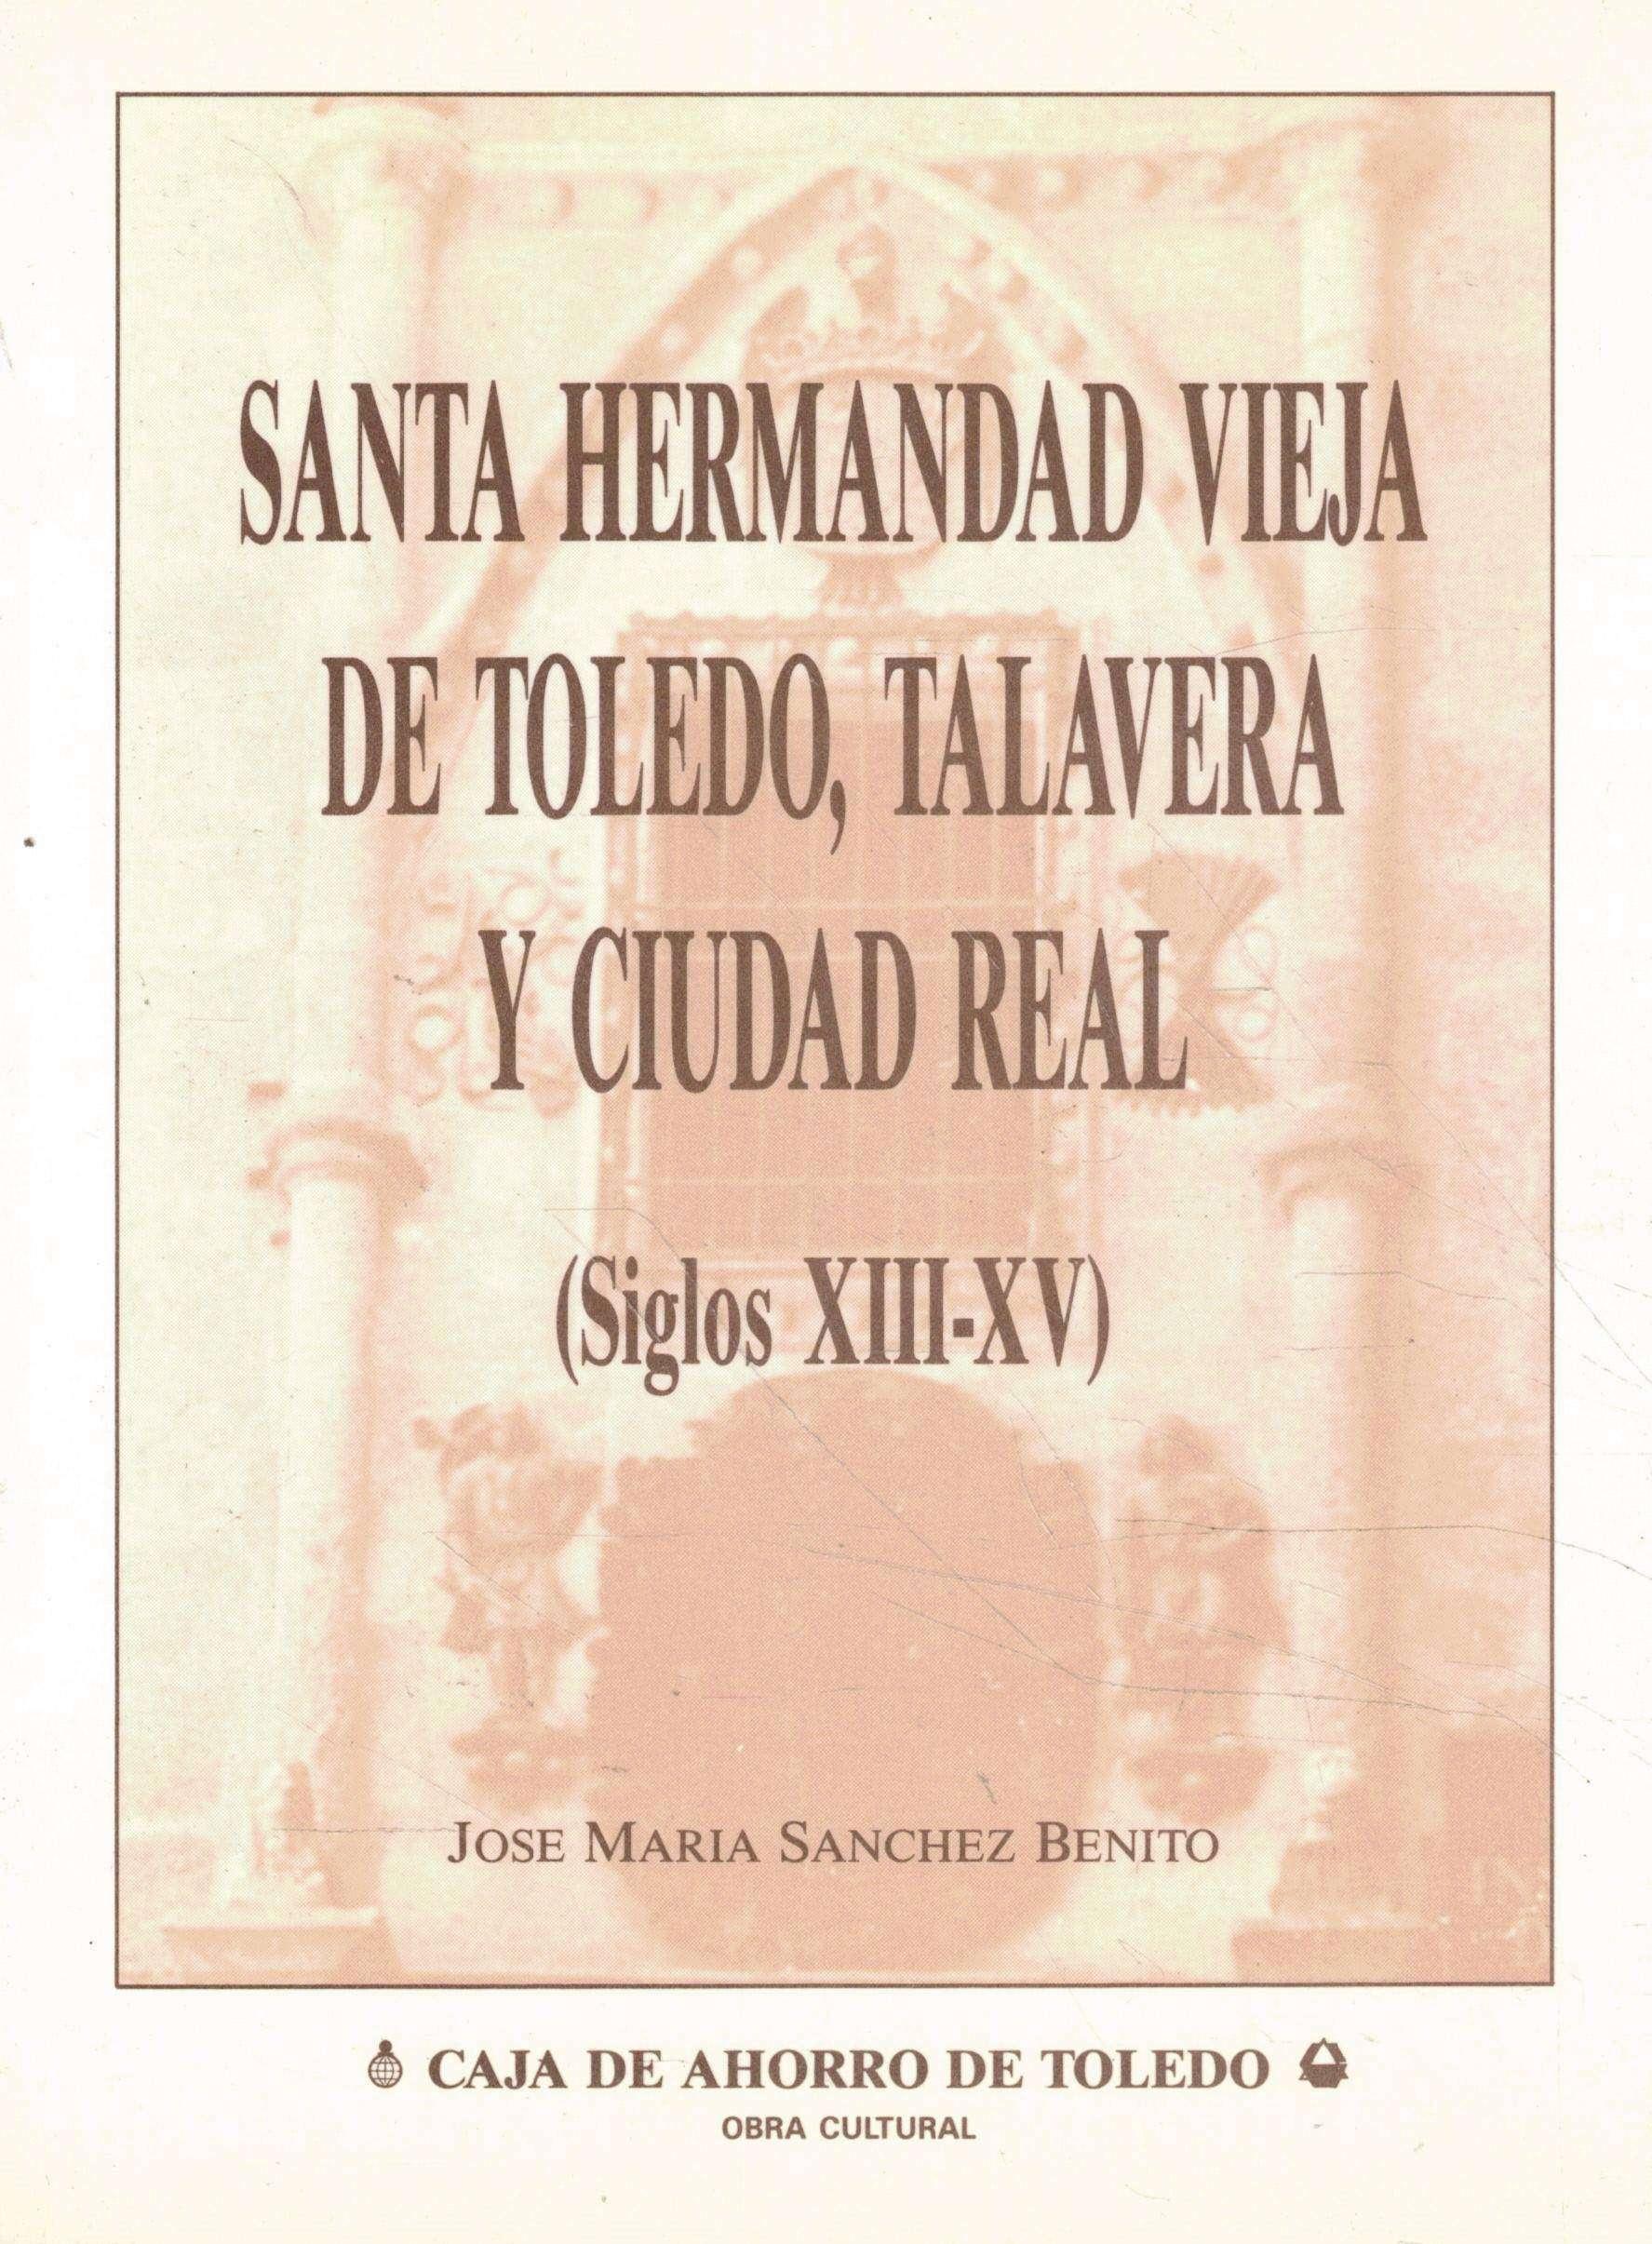 Santa Hermanda Vieja de Toledo, Talavera y Ciudad Real "(Siglo XIII-XV)"